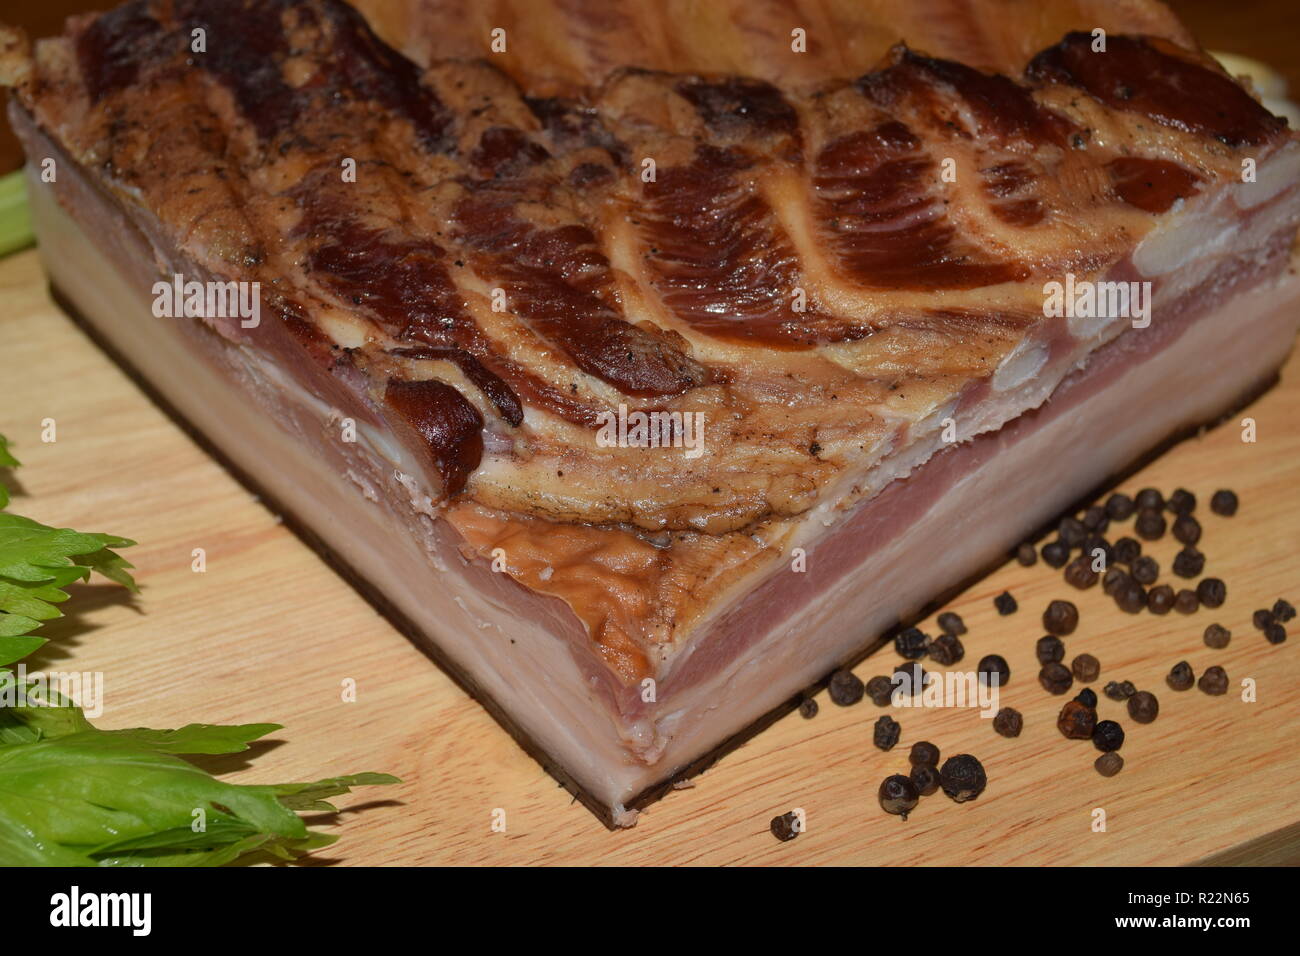 Tutta la fama di 'Smoked Bacon' Tedesco - Cibo, completamente indurito e affumicato di pancetta di maiale sul piatto di legno secondo la nonna ricetta e tecnica. Foto Stock